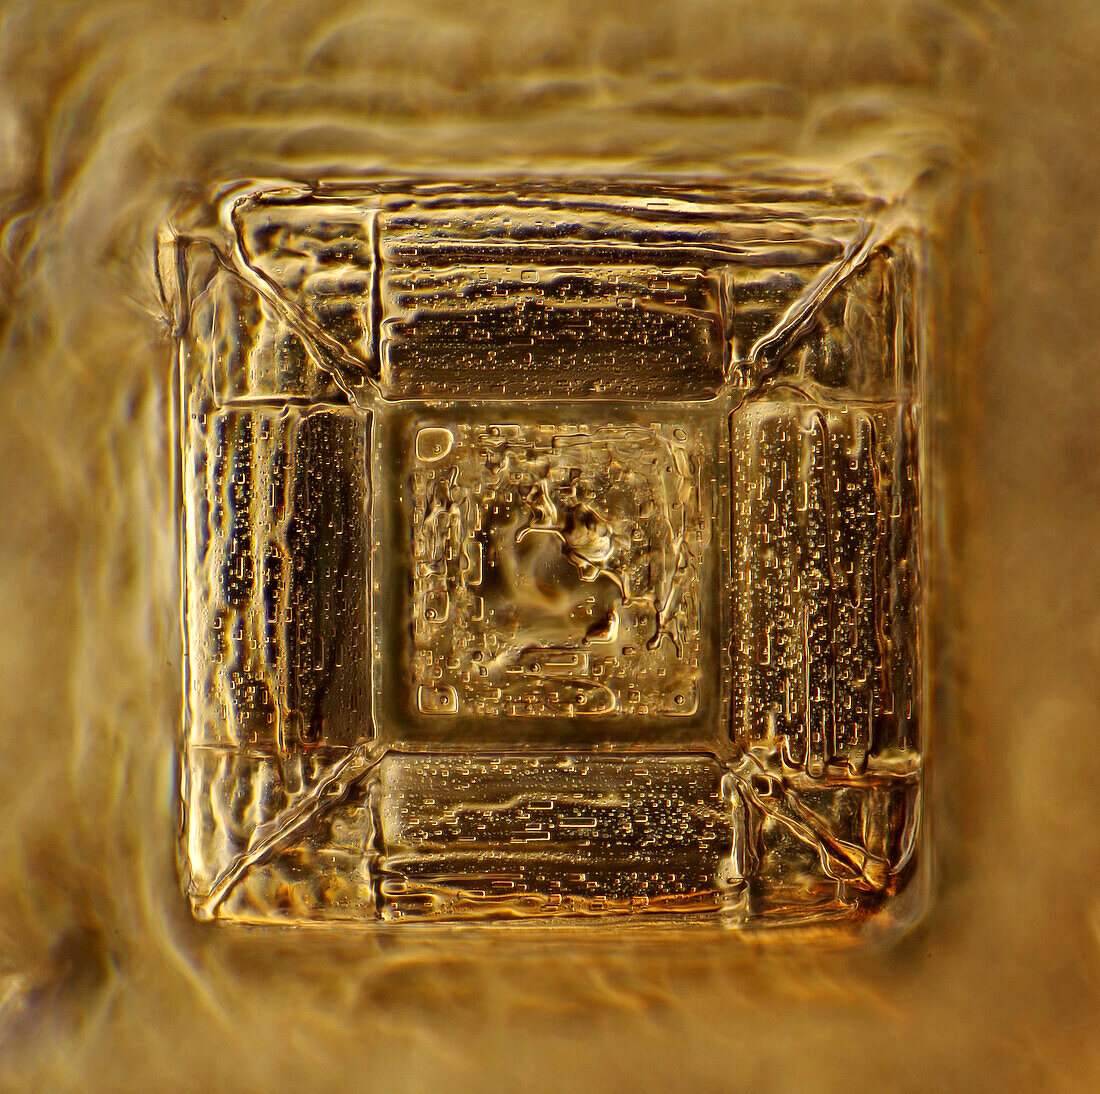 Recrystallised kitchen salt, light micrograph